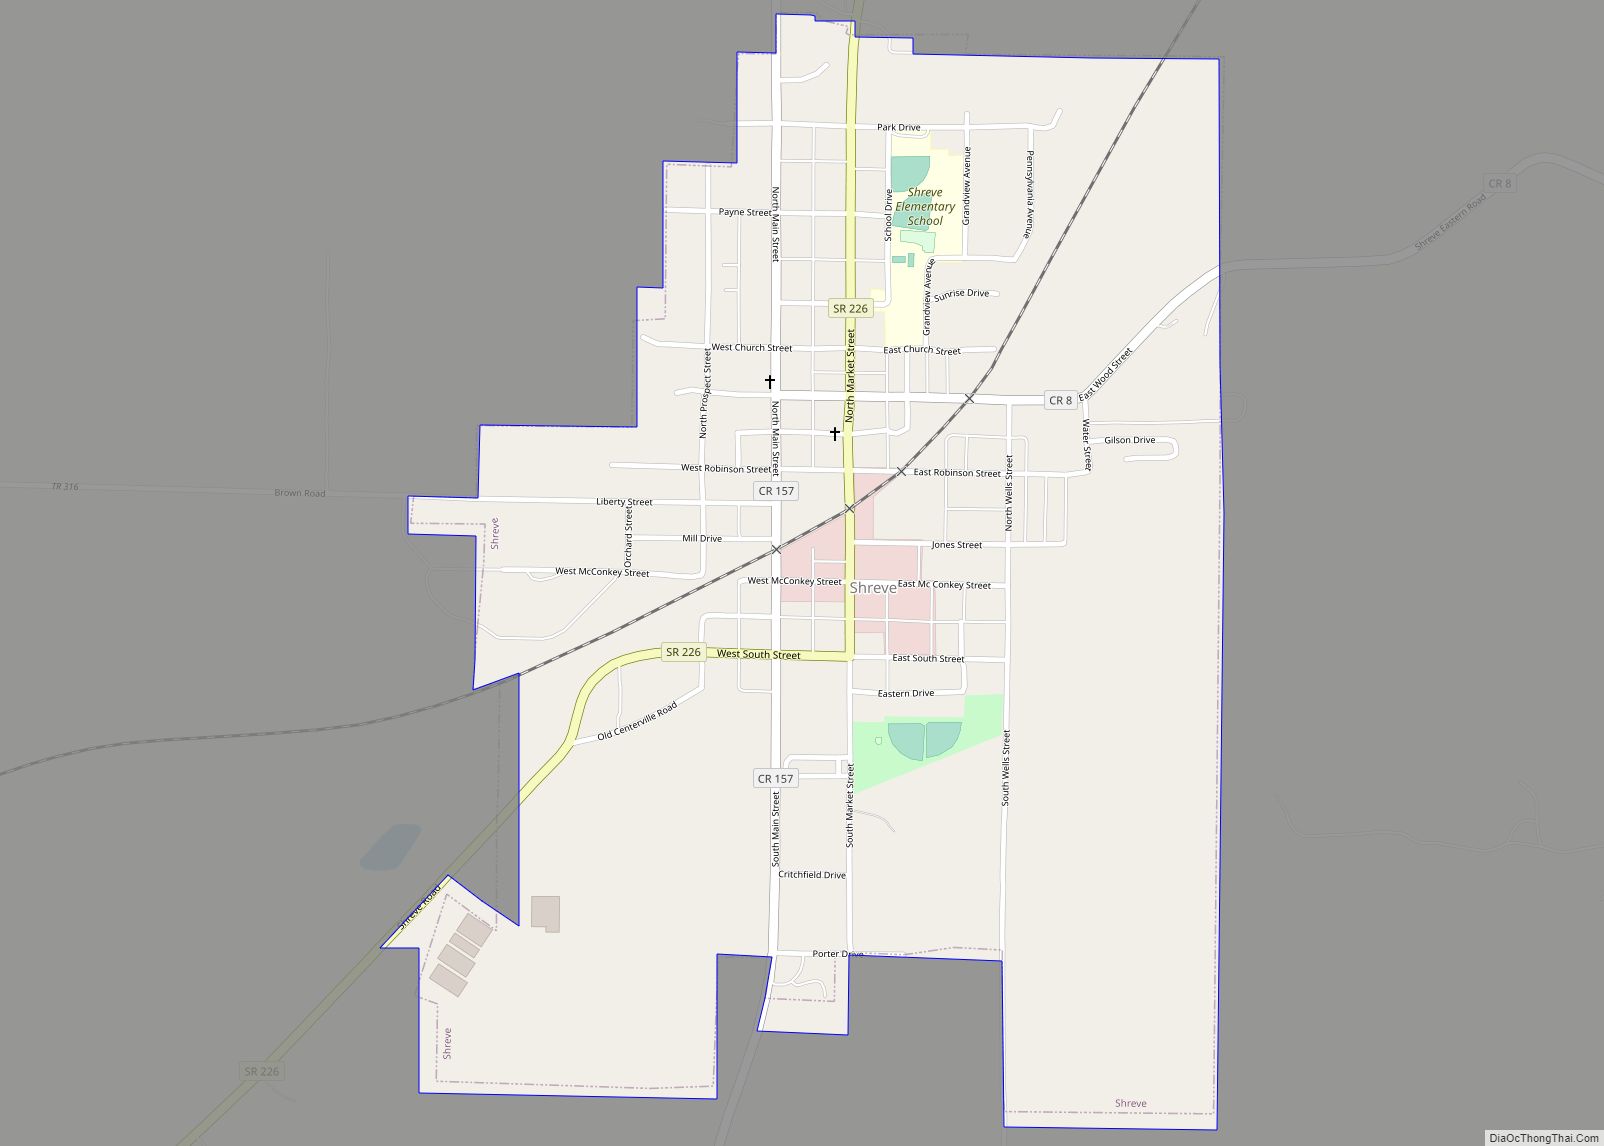 Map of Shreve village